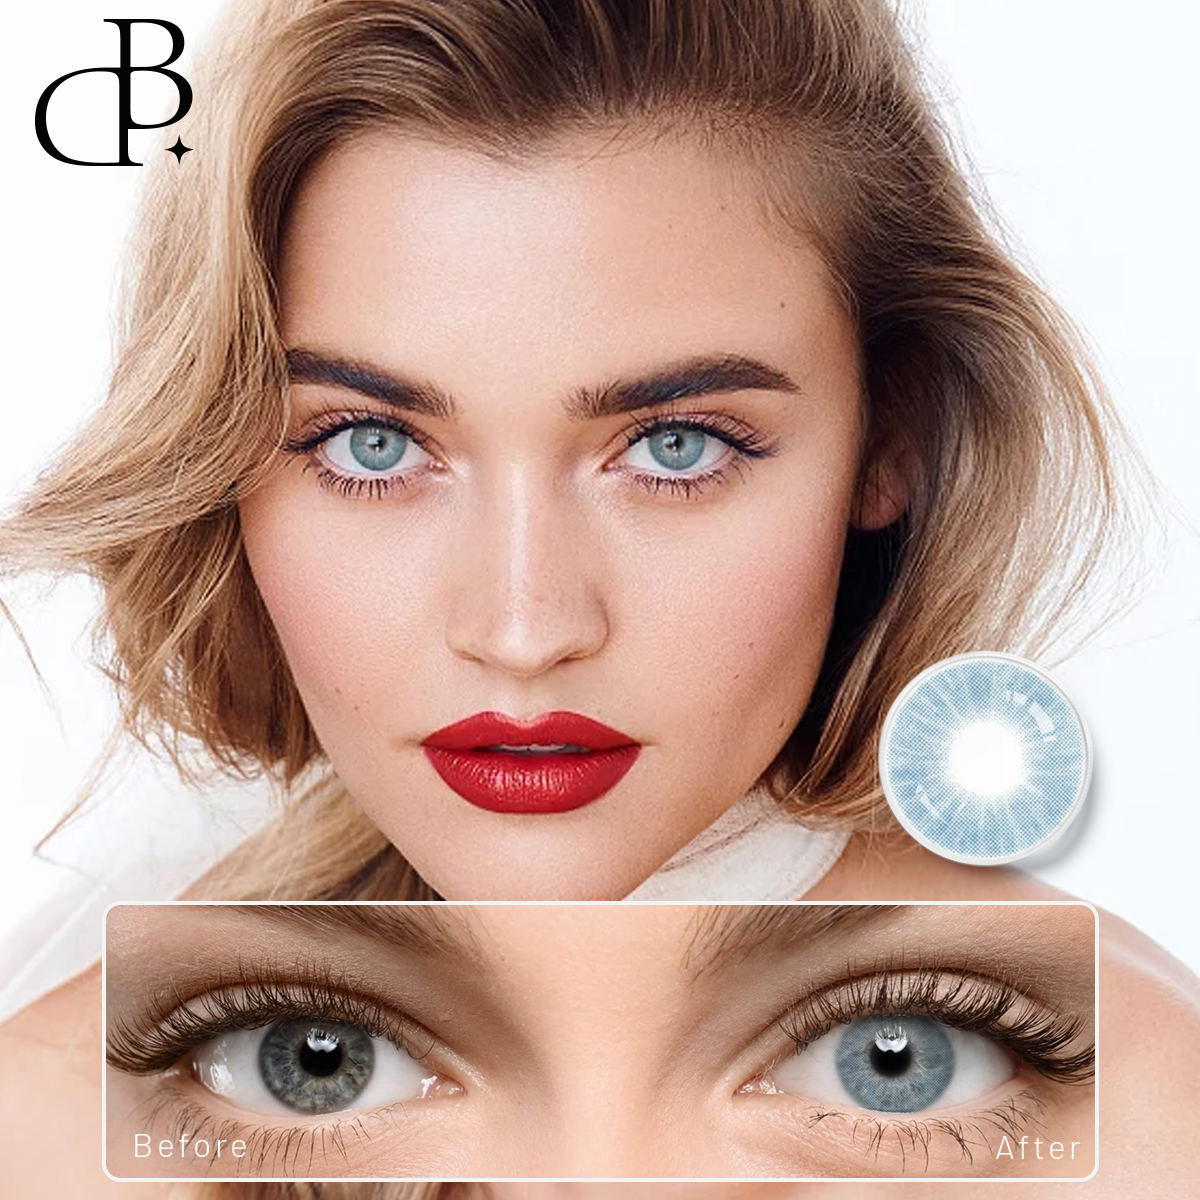 DBEYES កែវភ្នែកពណ៌ធម្មជាតិបំផុត Magic Color Soft Contact Lens ជាមួយនឹងថាមពលតាមវេជ្ជបញ្ជា ដឹកជញ្ជូនដោយឥតគិតថ្លៃ